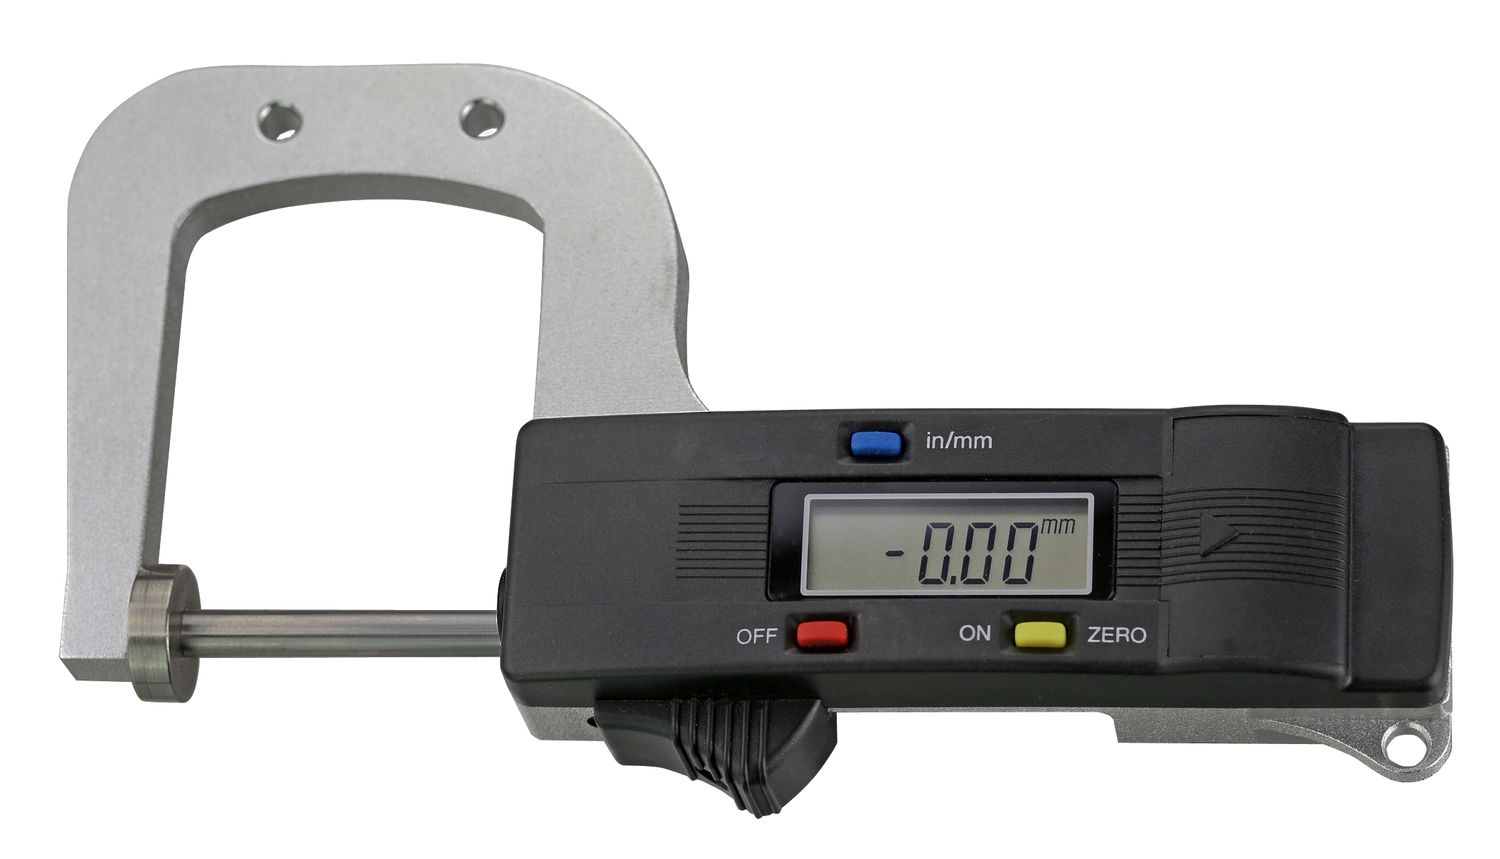 Digitales Dicken-Messgerät 0-25 x 50 mm | 0,01 mm mit ebener Messfläche